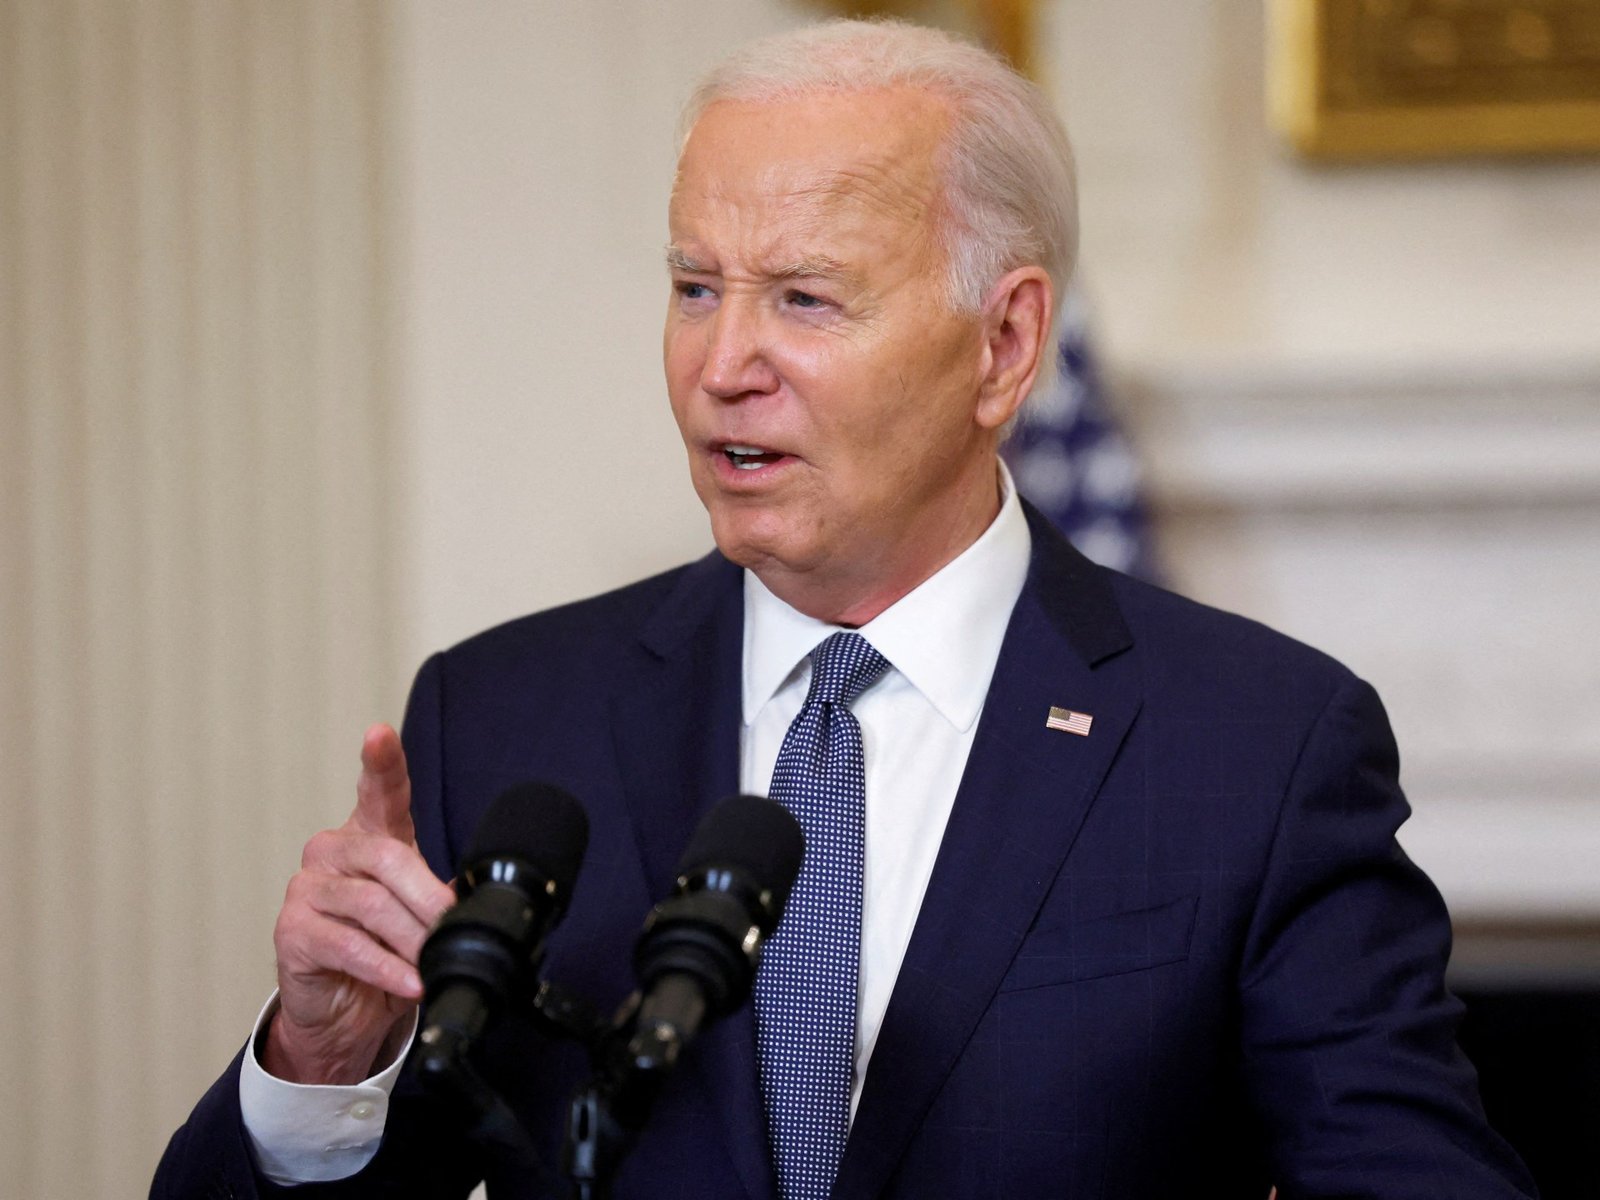 Biden says Israel has agreed to enduring Gaza ceasefire proposal | Joe Biden News